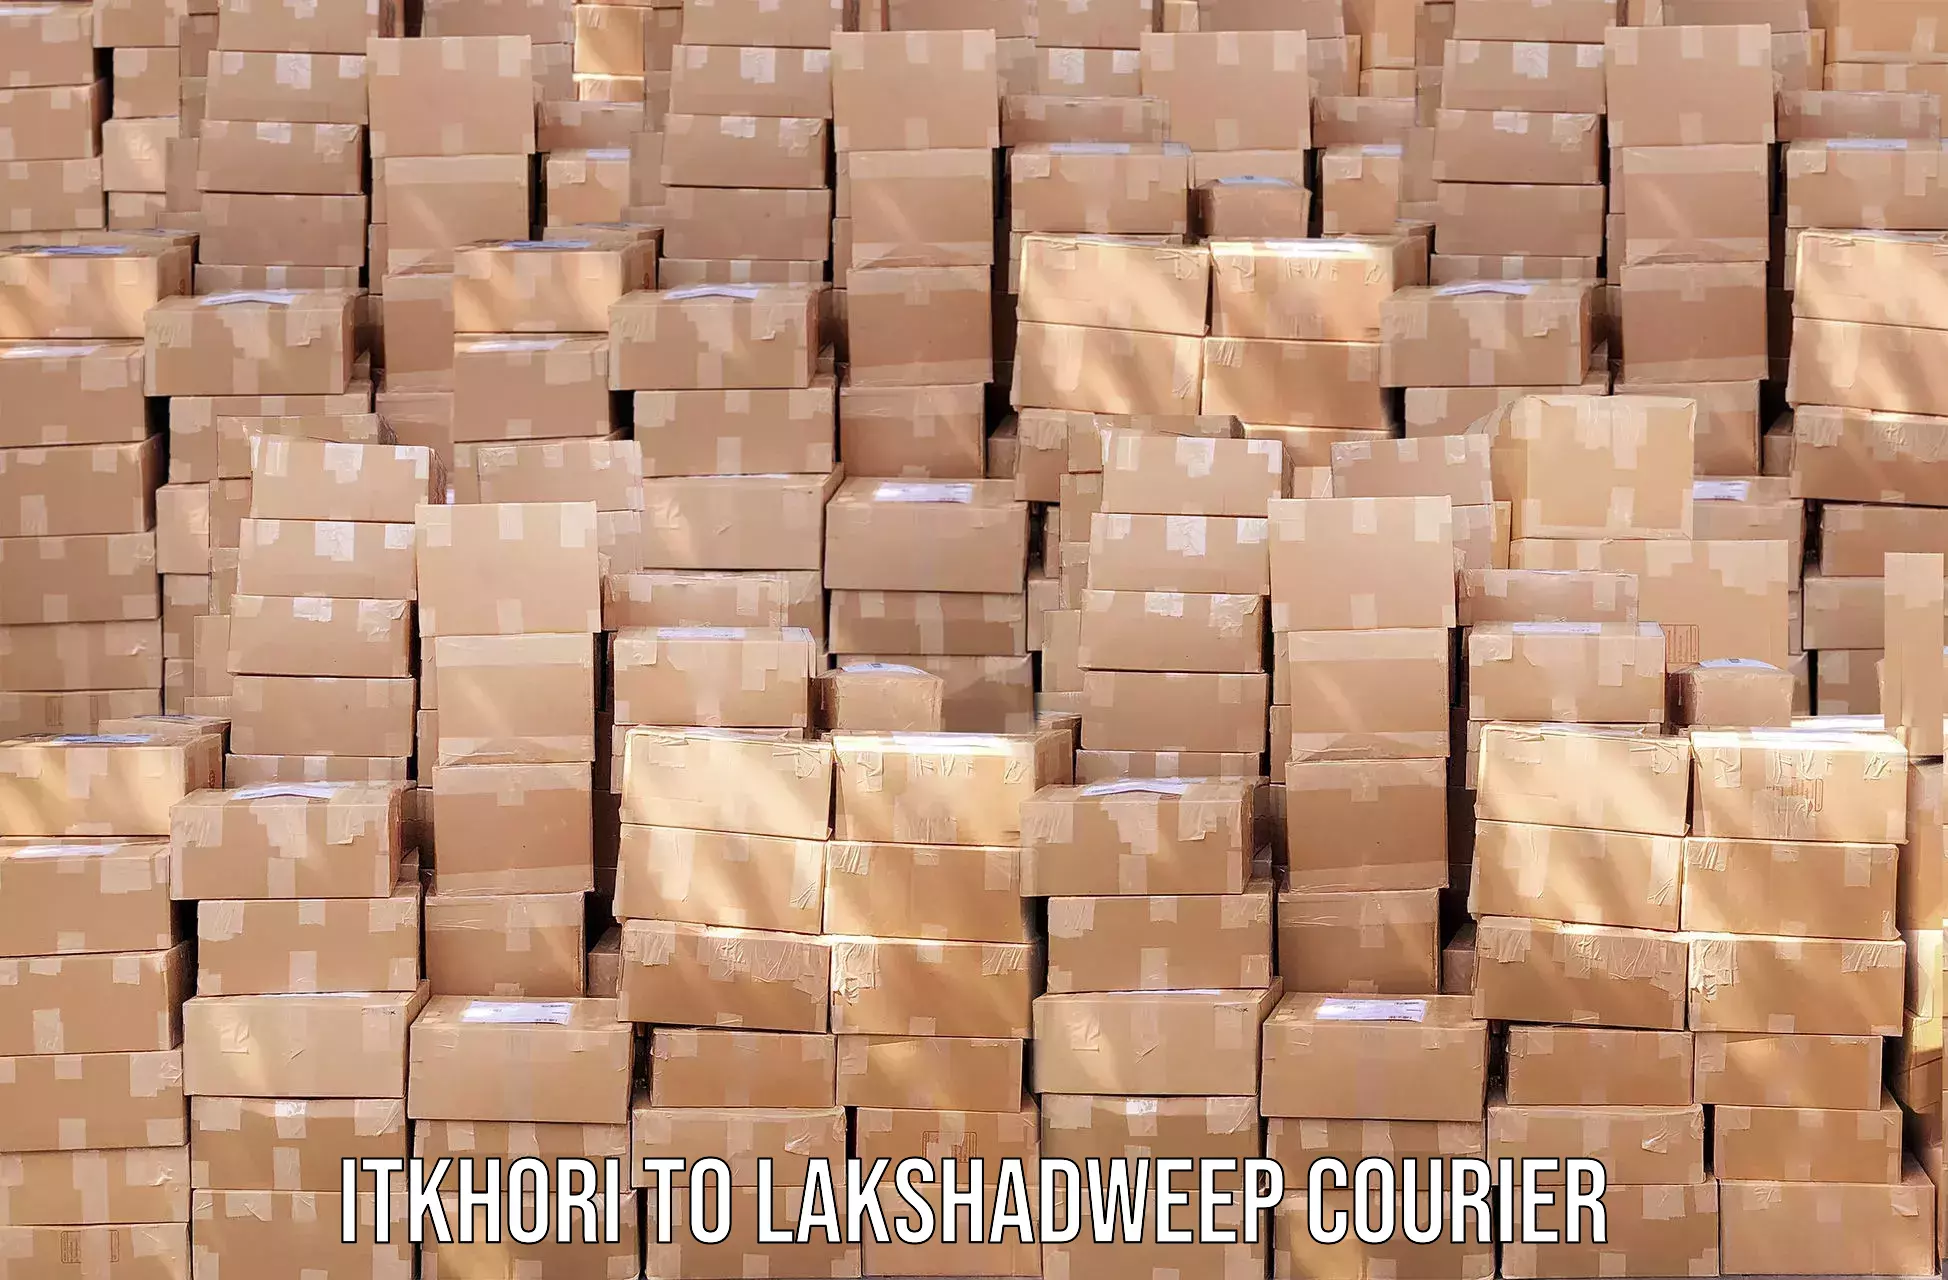 Efficient cargo handling Itkhori to Lakshadweep